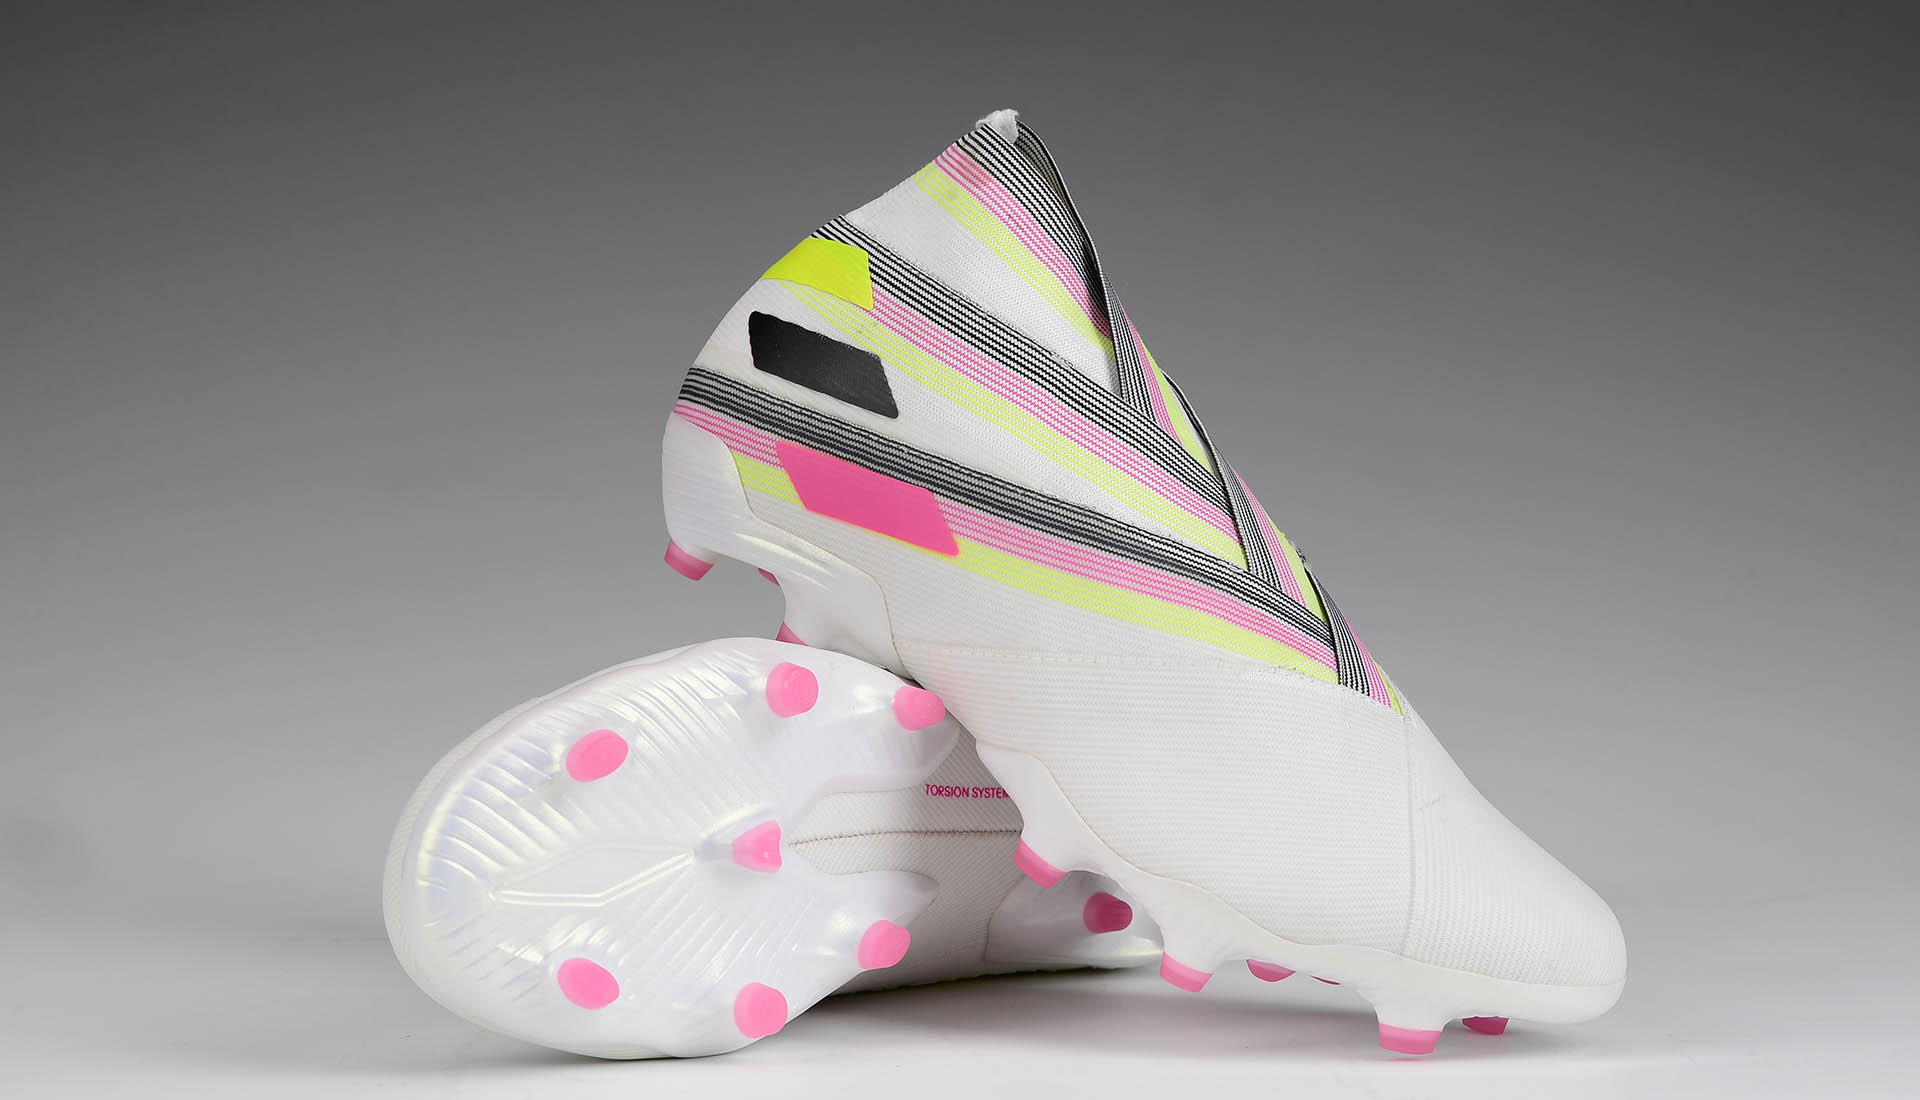 Adidas Nemeziz 19+ FG Limited Edition - White/Pink/Solar Yellow Nike Shoes